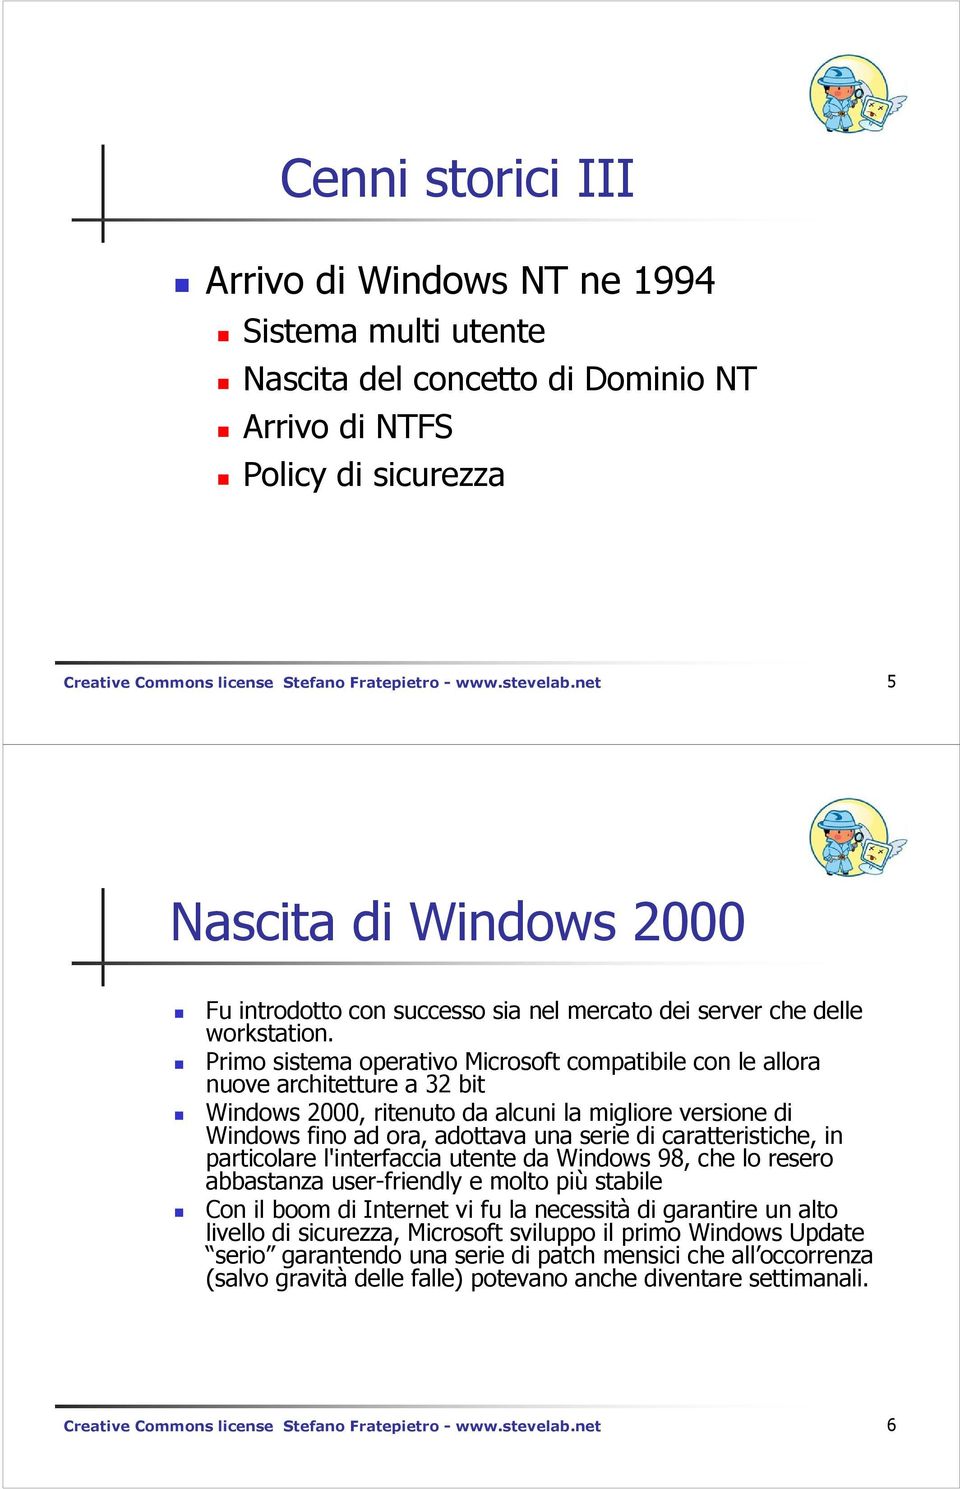 Primo sistema operativo Microsoft compatibile con le allora nuove architetture a 32 bit Windows 2000, ritenuto da alcuni la migliore versione di Windows fino ad ora, adottava una serie di